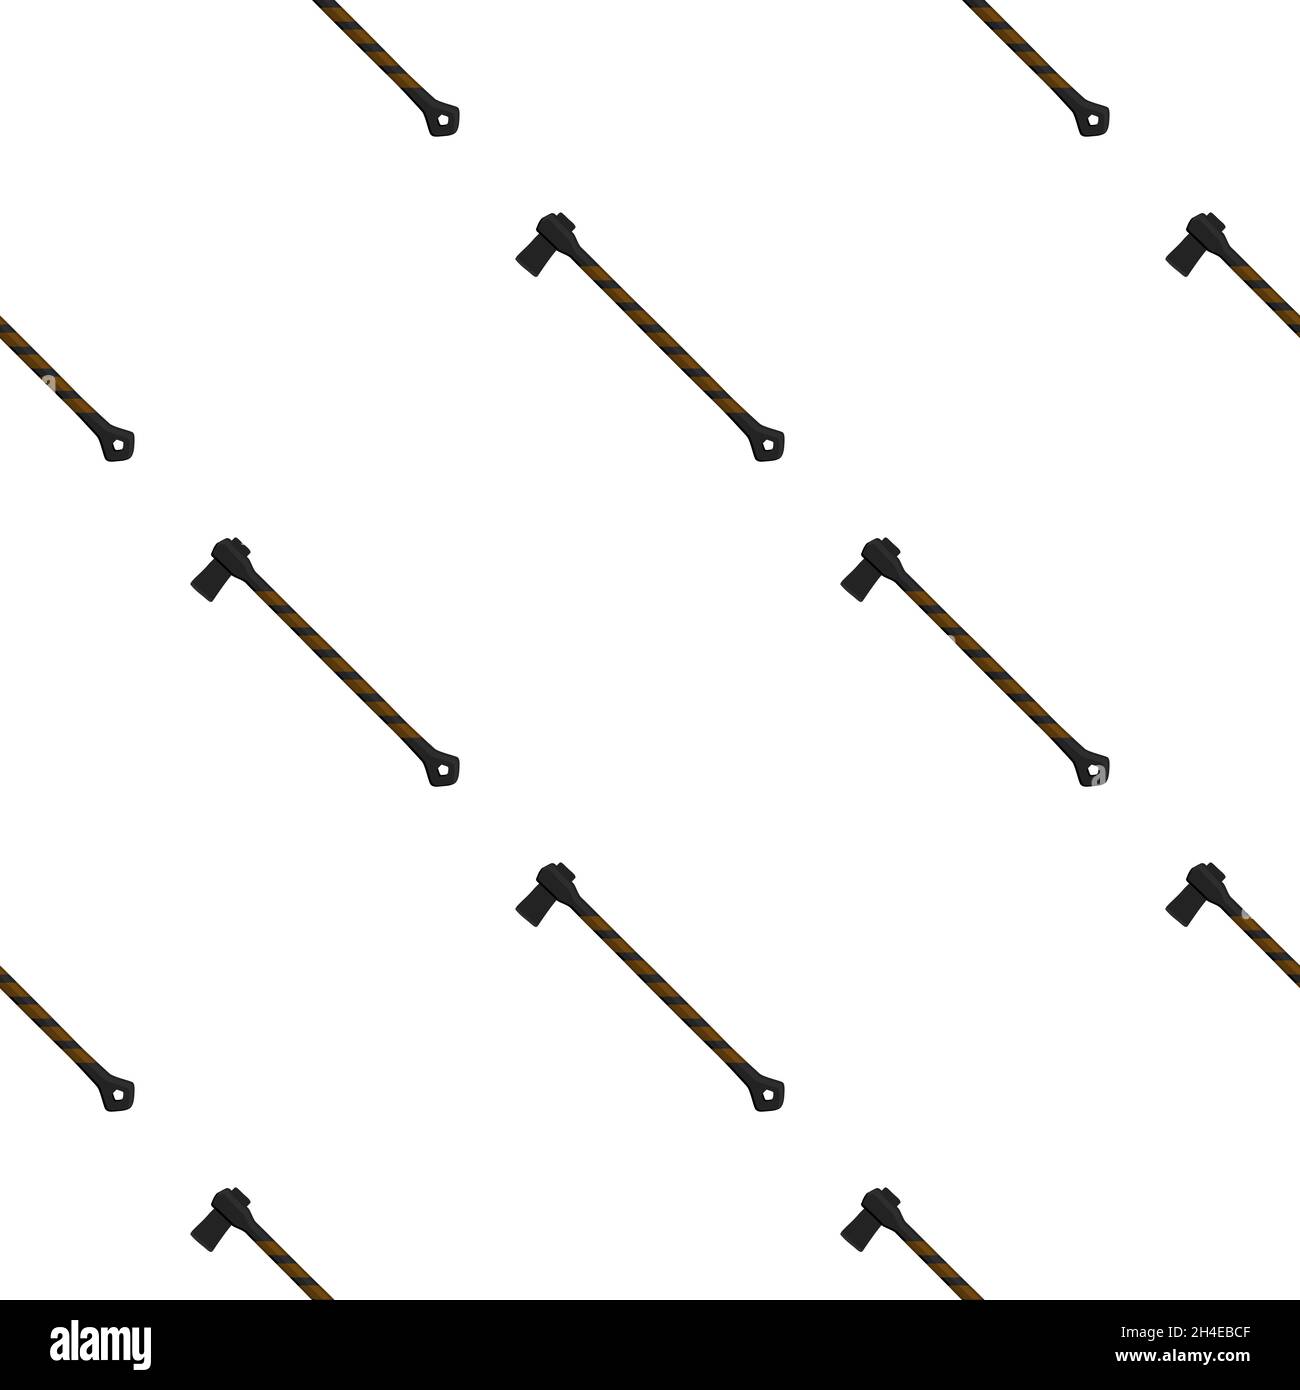 Illustration auf Themenmuster Stahlachsen mit Holzgriff, Metallaxt für die Jagd. Große Kit-Axt, bestehend aus vielen identischen Achsen auf weißem Hintergrund. F Stock Vektor